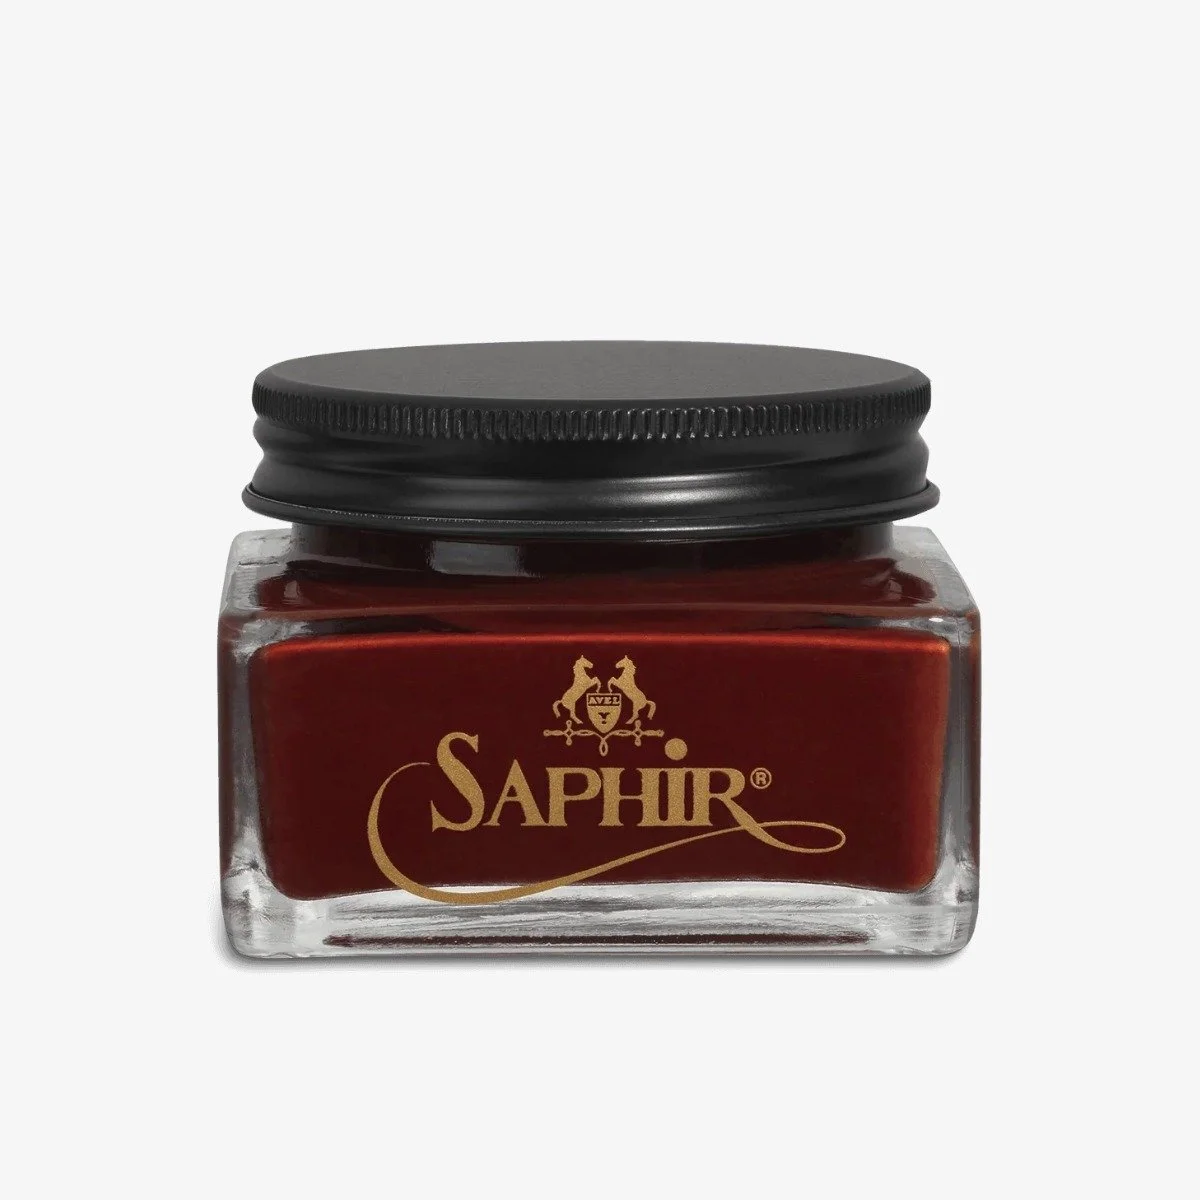 Saphir Creme 1925 mahogany